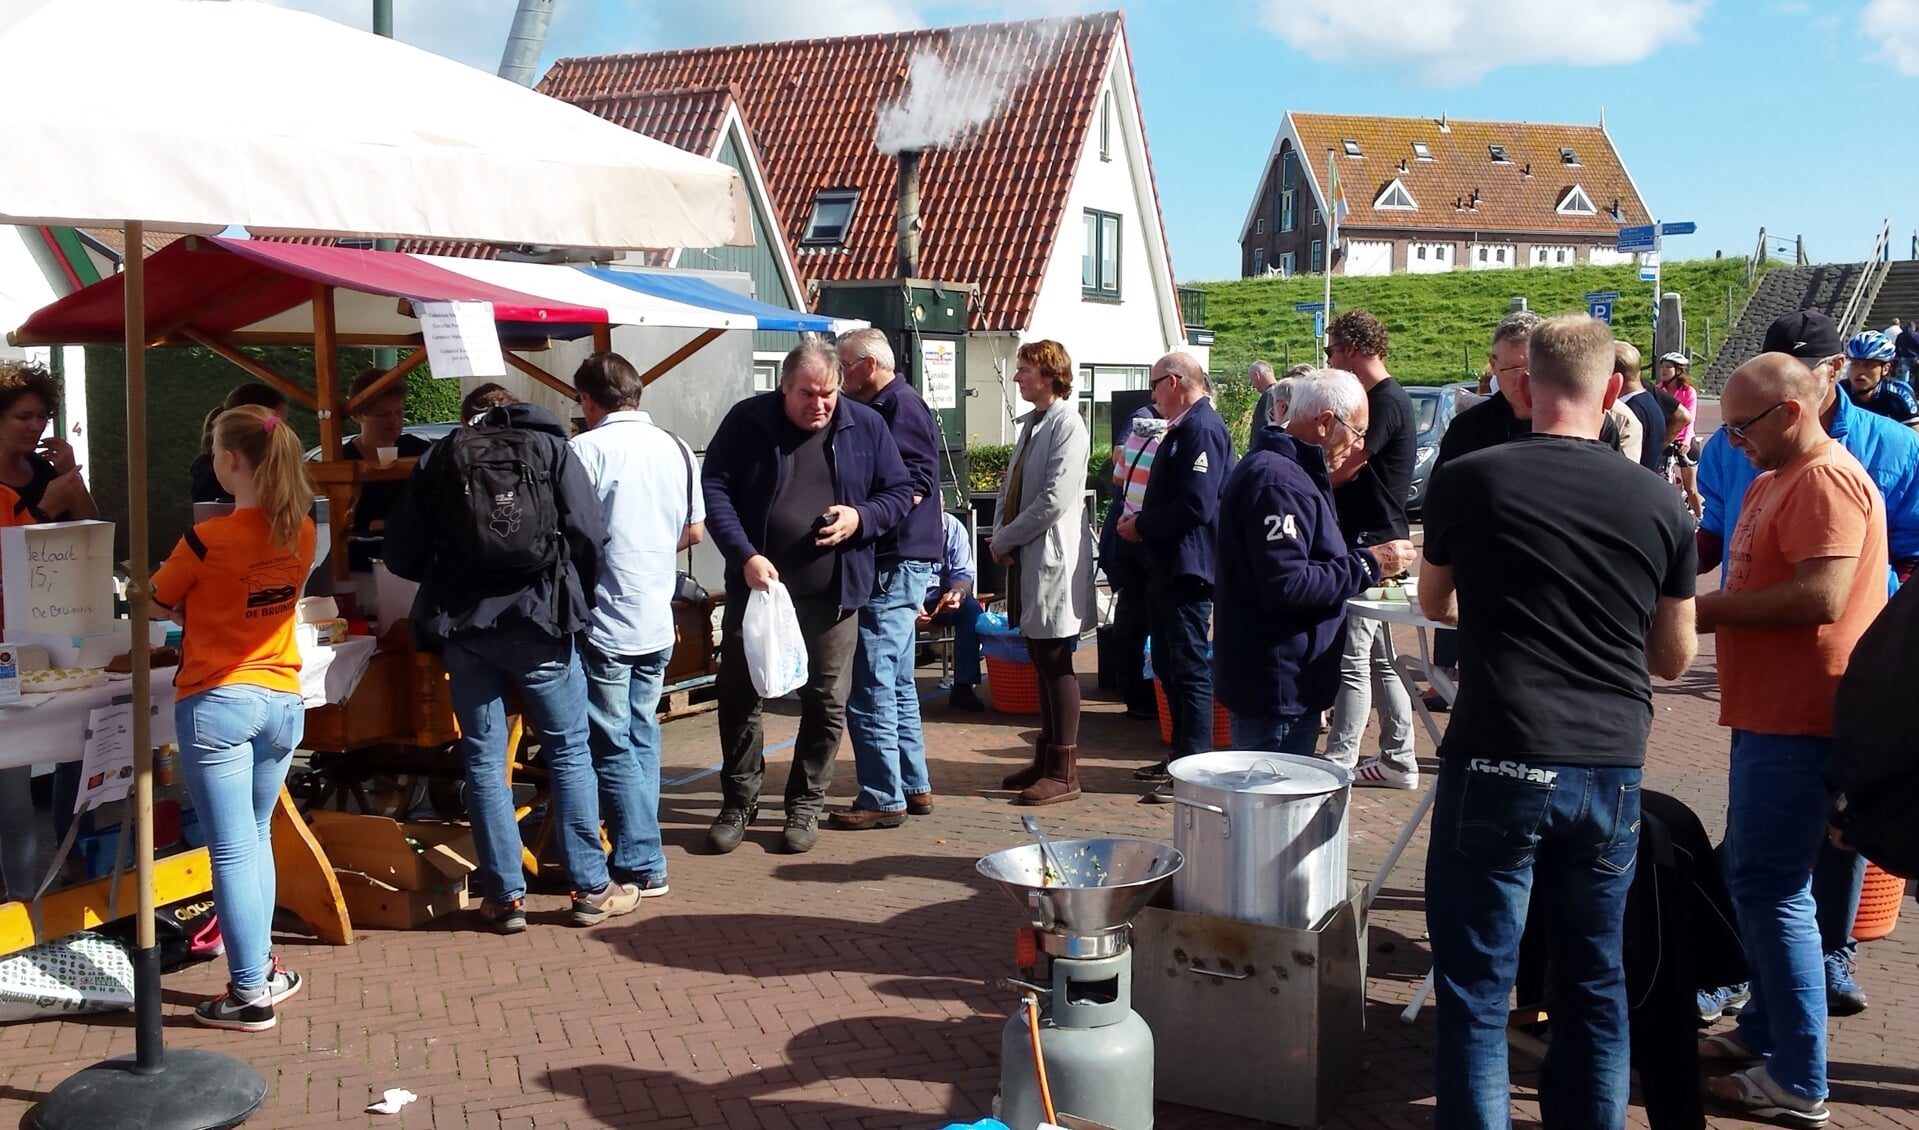 De verkoop van vis in de Heemskerkstraat in 2015. (Foto Frans  Coevert)